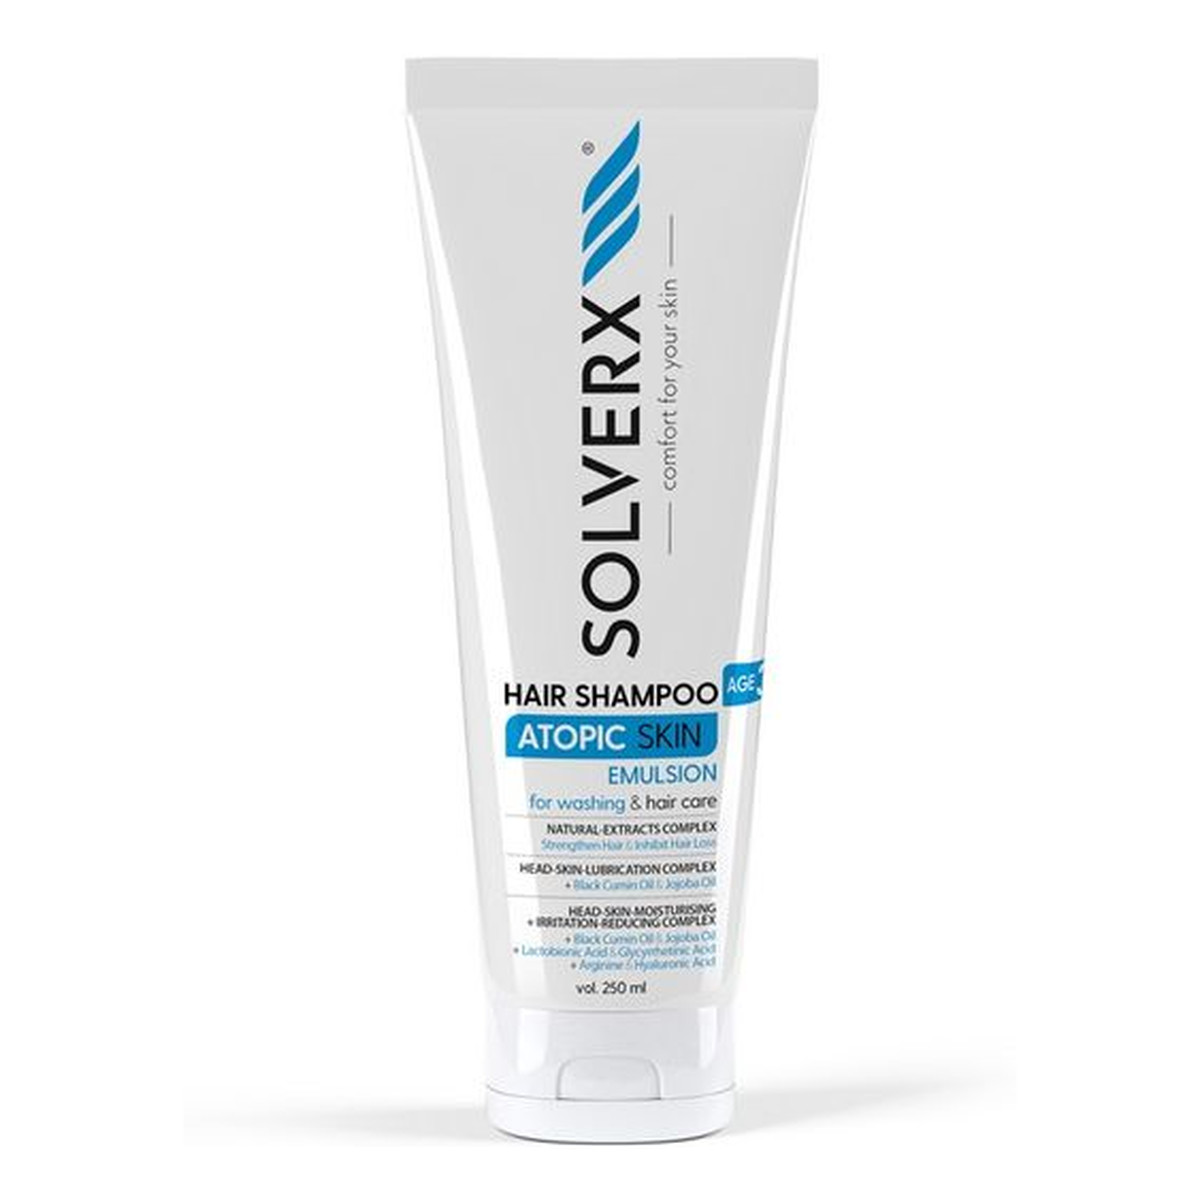 Solverx Atopic Skin Szampon do włosów 250ml